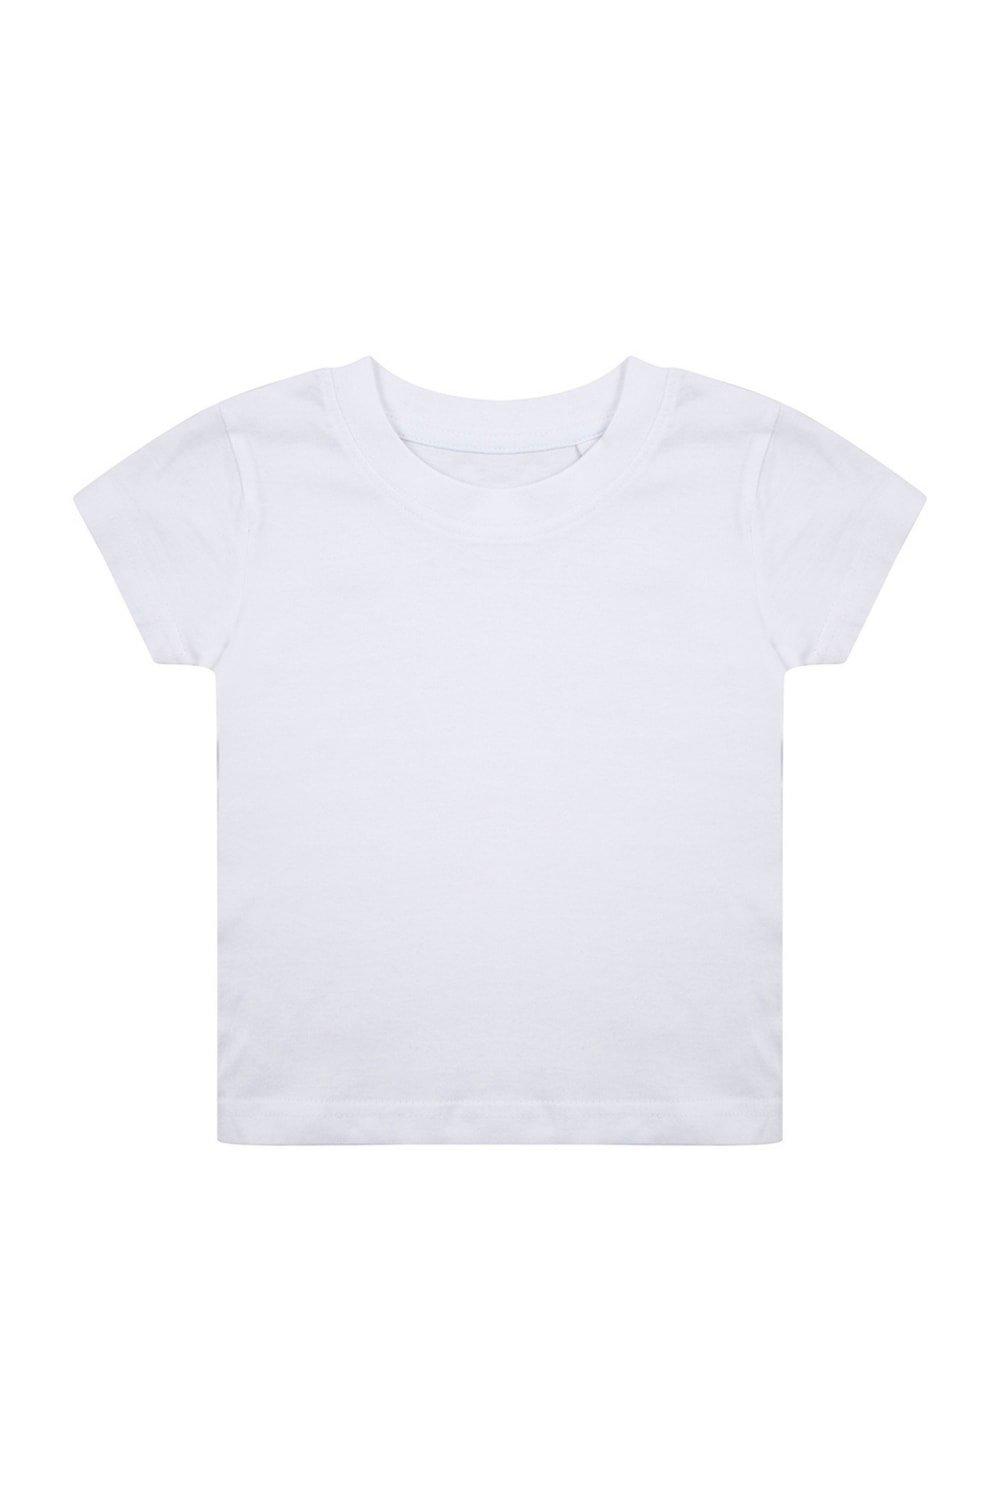 Органическая футболка Larkwood, белый органическая футболка larkwood белый